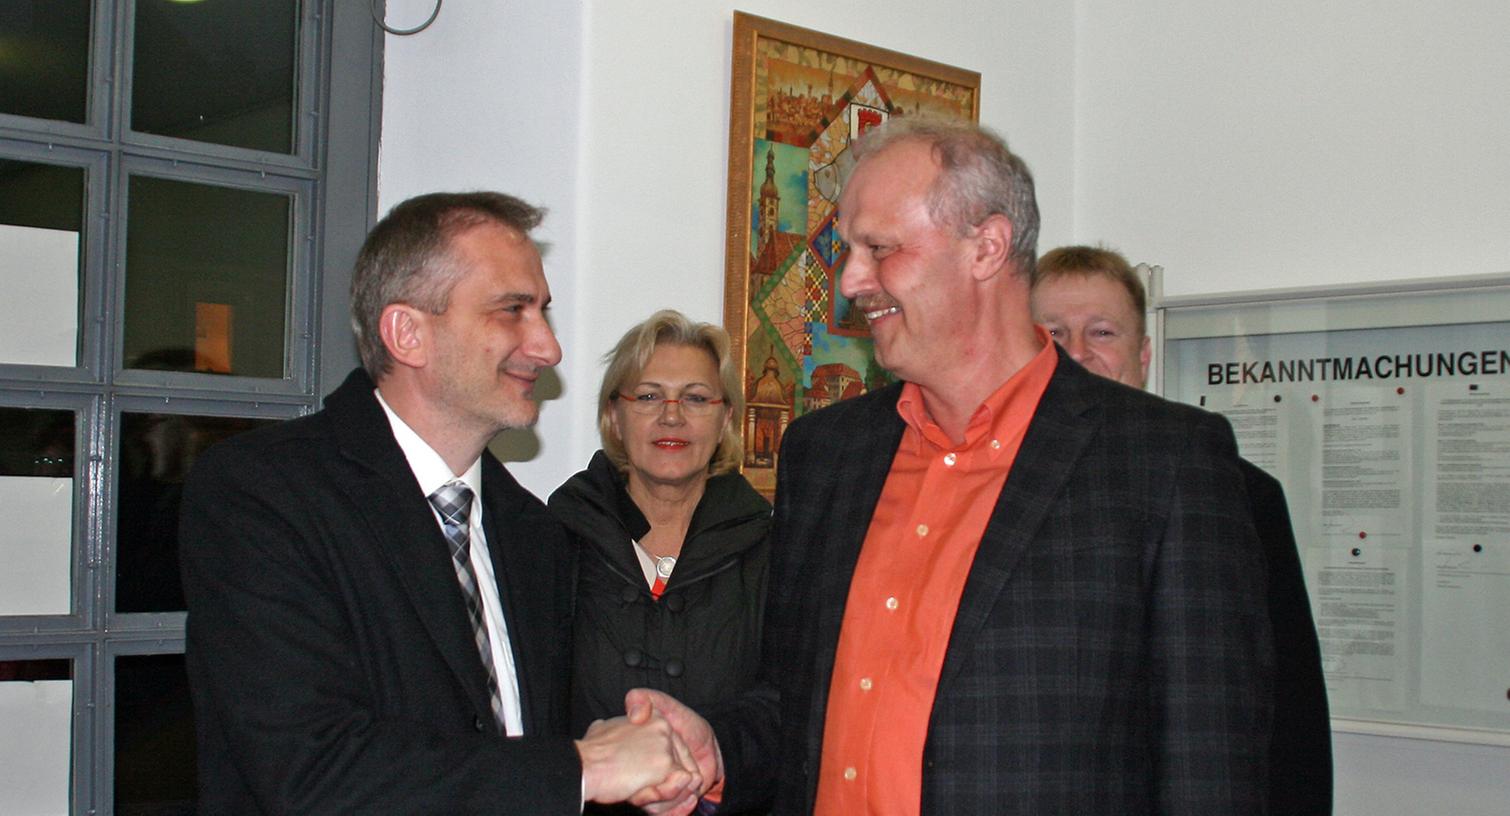 Seine Enttäuschung ließ sich Alexander Schulz (l.) nicht anmerken. Er gratulierte dem wiedergewählten Bürgermeister Gerald Brehm zu seinem Wahlerfolg.